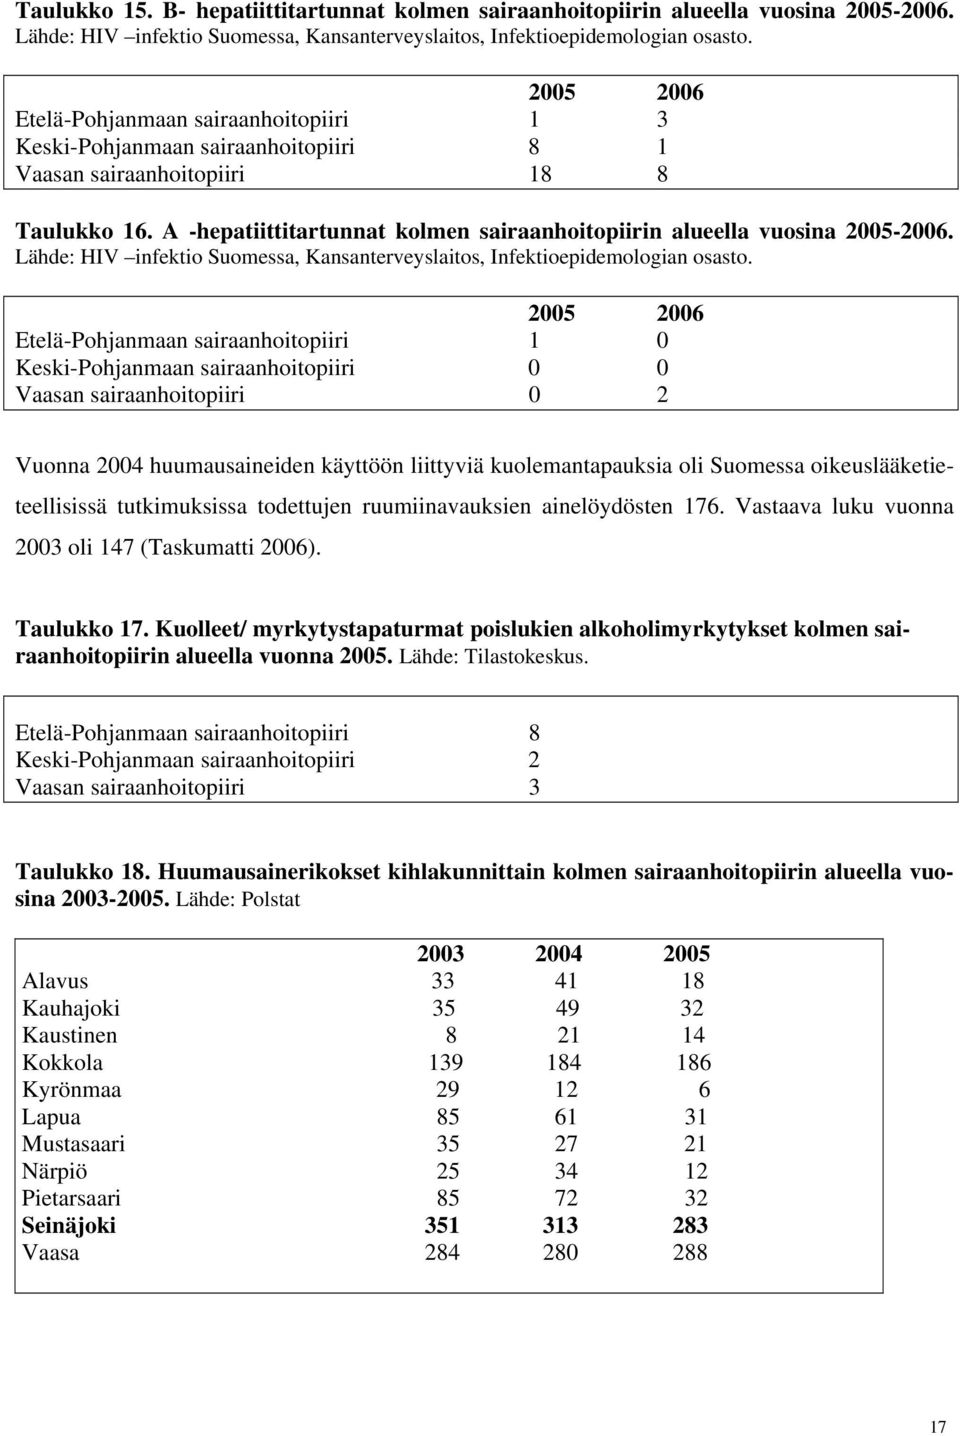 A -hepatiittitartunnat kolmen sairaanhoitopiirin alueella vuosina 2005-2006. Lähde: HIV infektio Suomessa, Kansanterveyslaitos, Infektioepidemologian osasto.